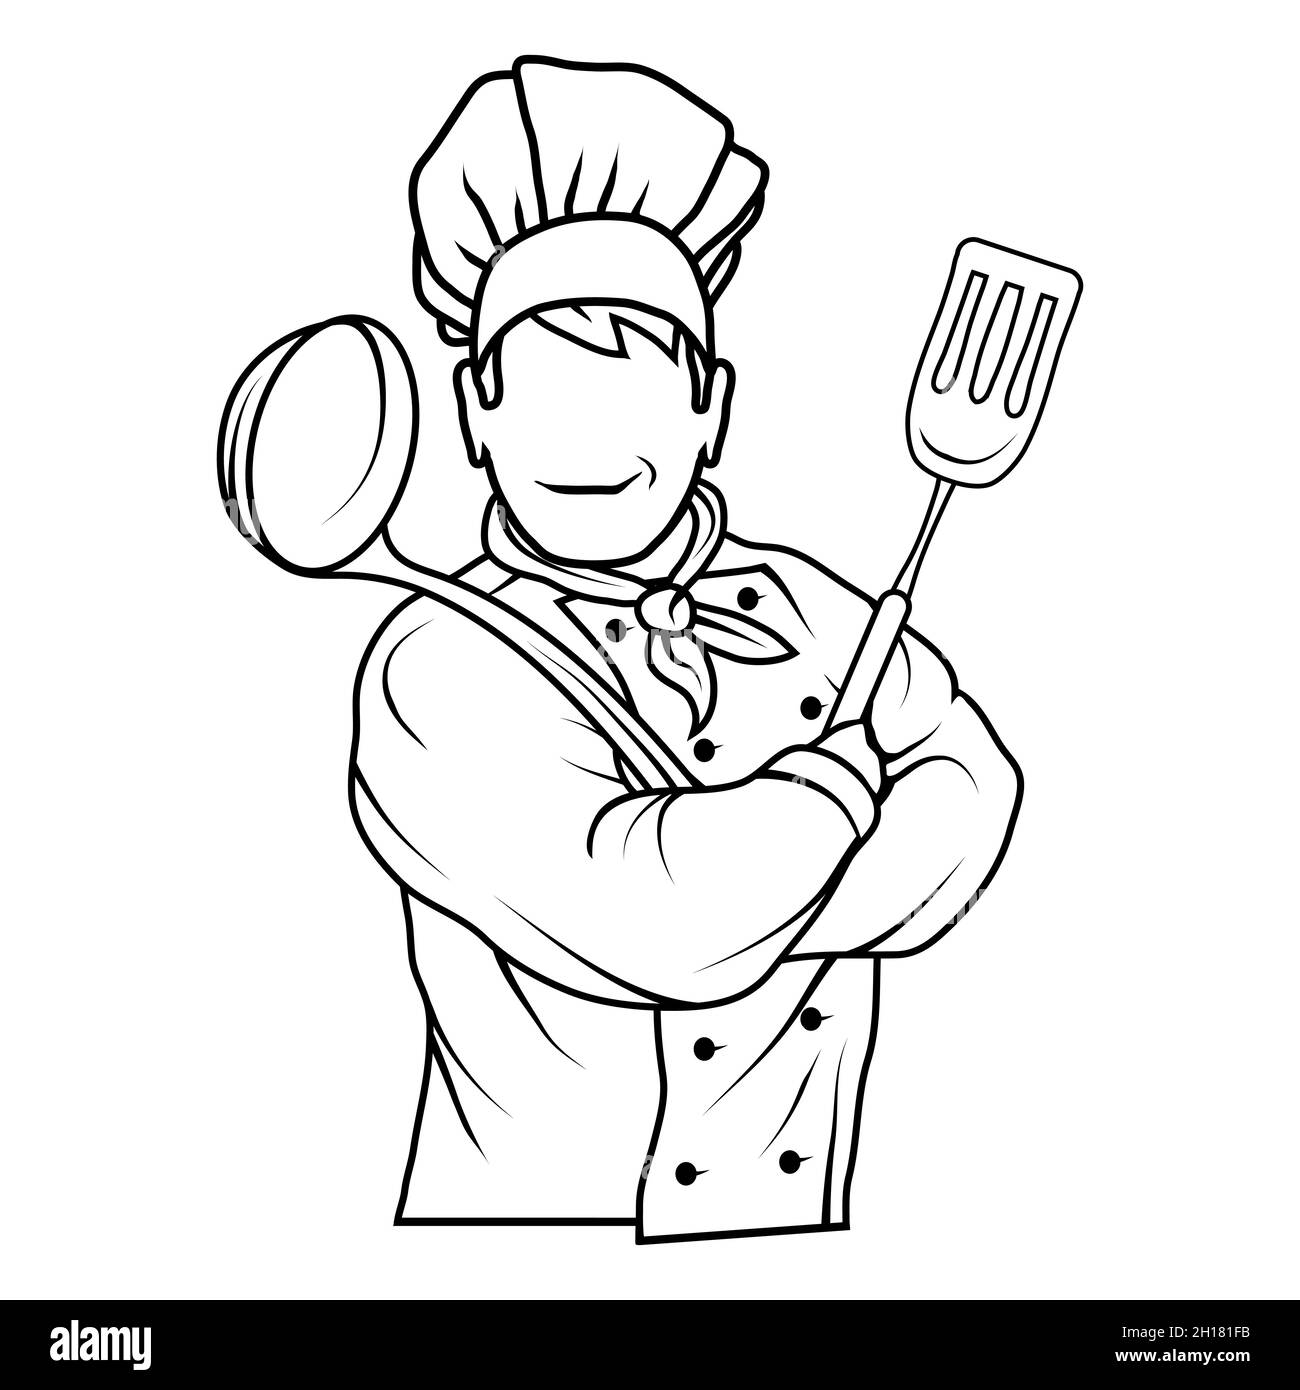 Chef cuisinier debout dans une posture différente.Chef en uniforme.Logo Cook.Chapeau de chef.Chef cuisinier professionnel Illustration de Vecteur